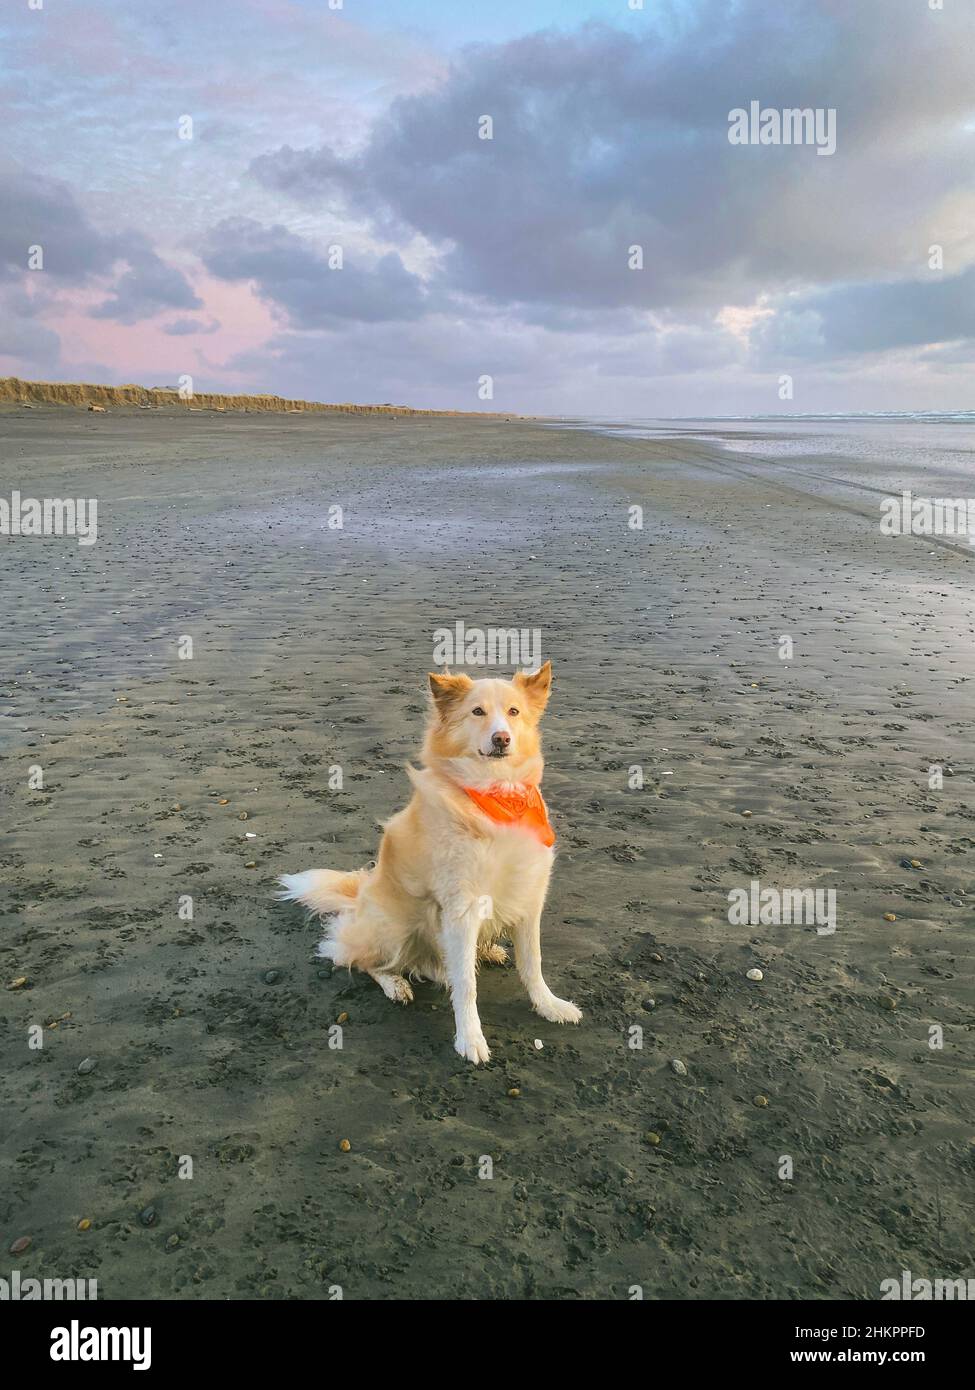 Dog sitting on the beach wearing a bandana Stock Photo